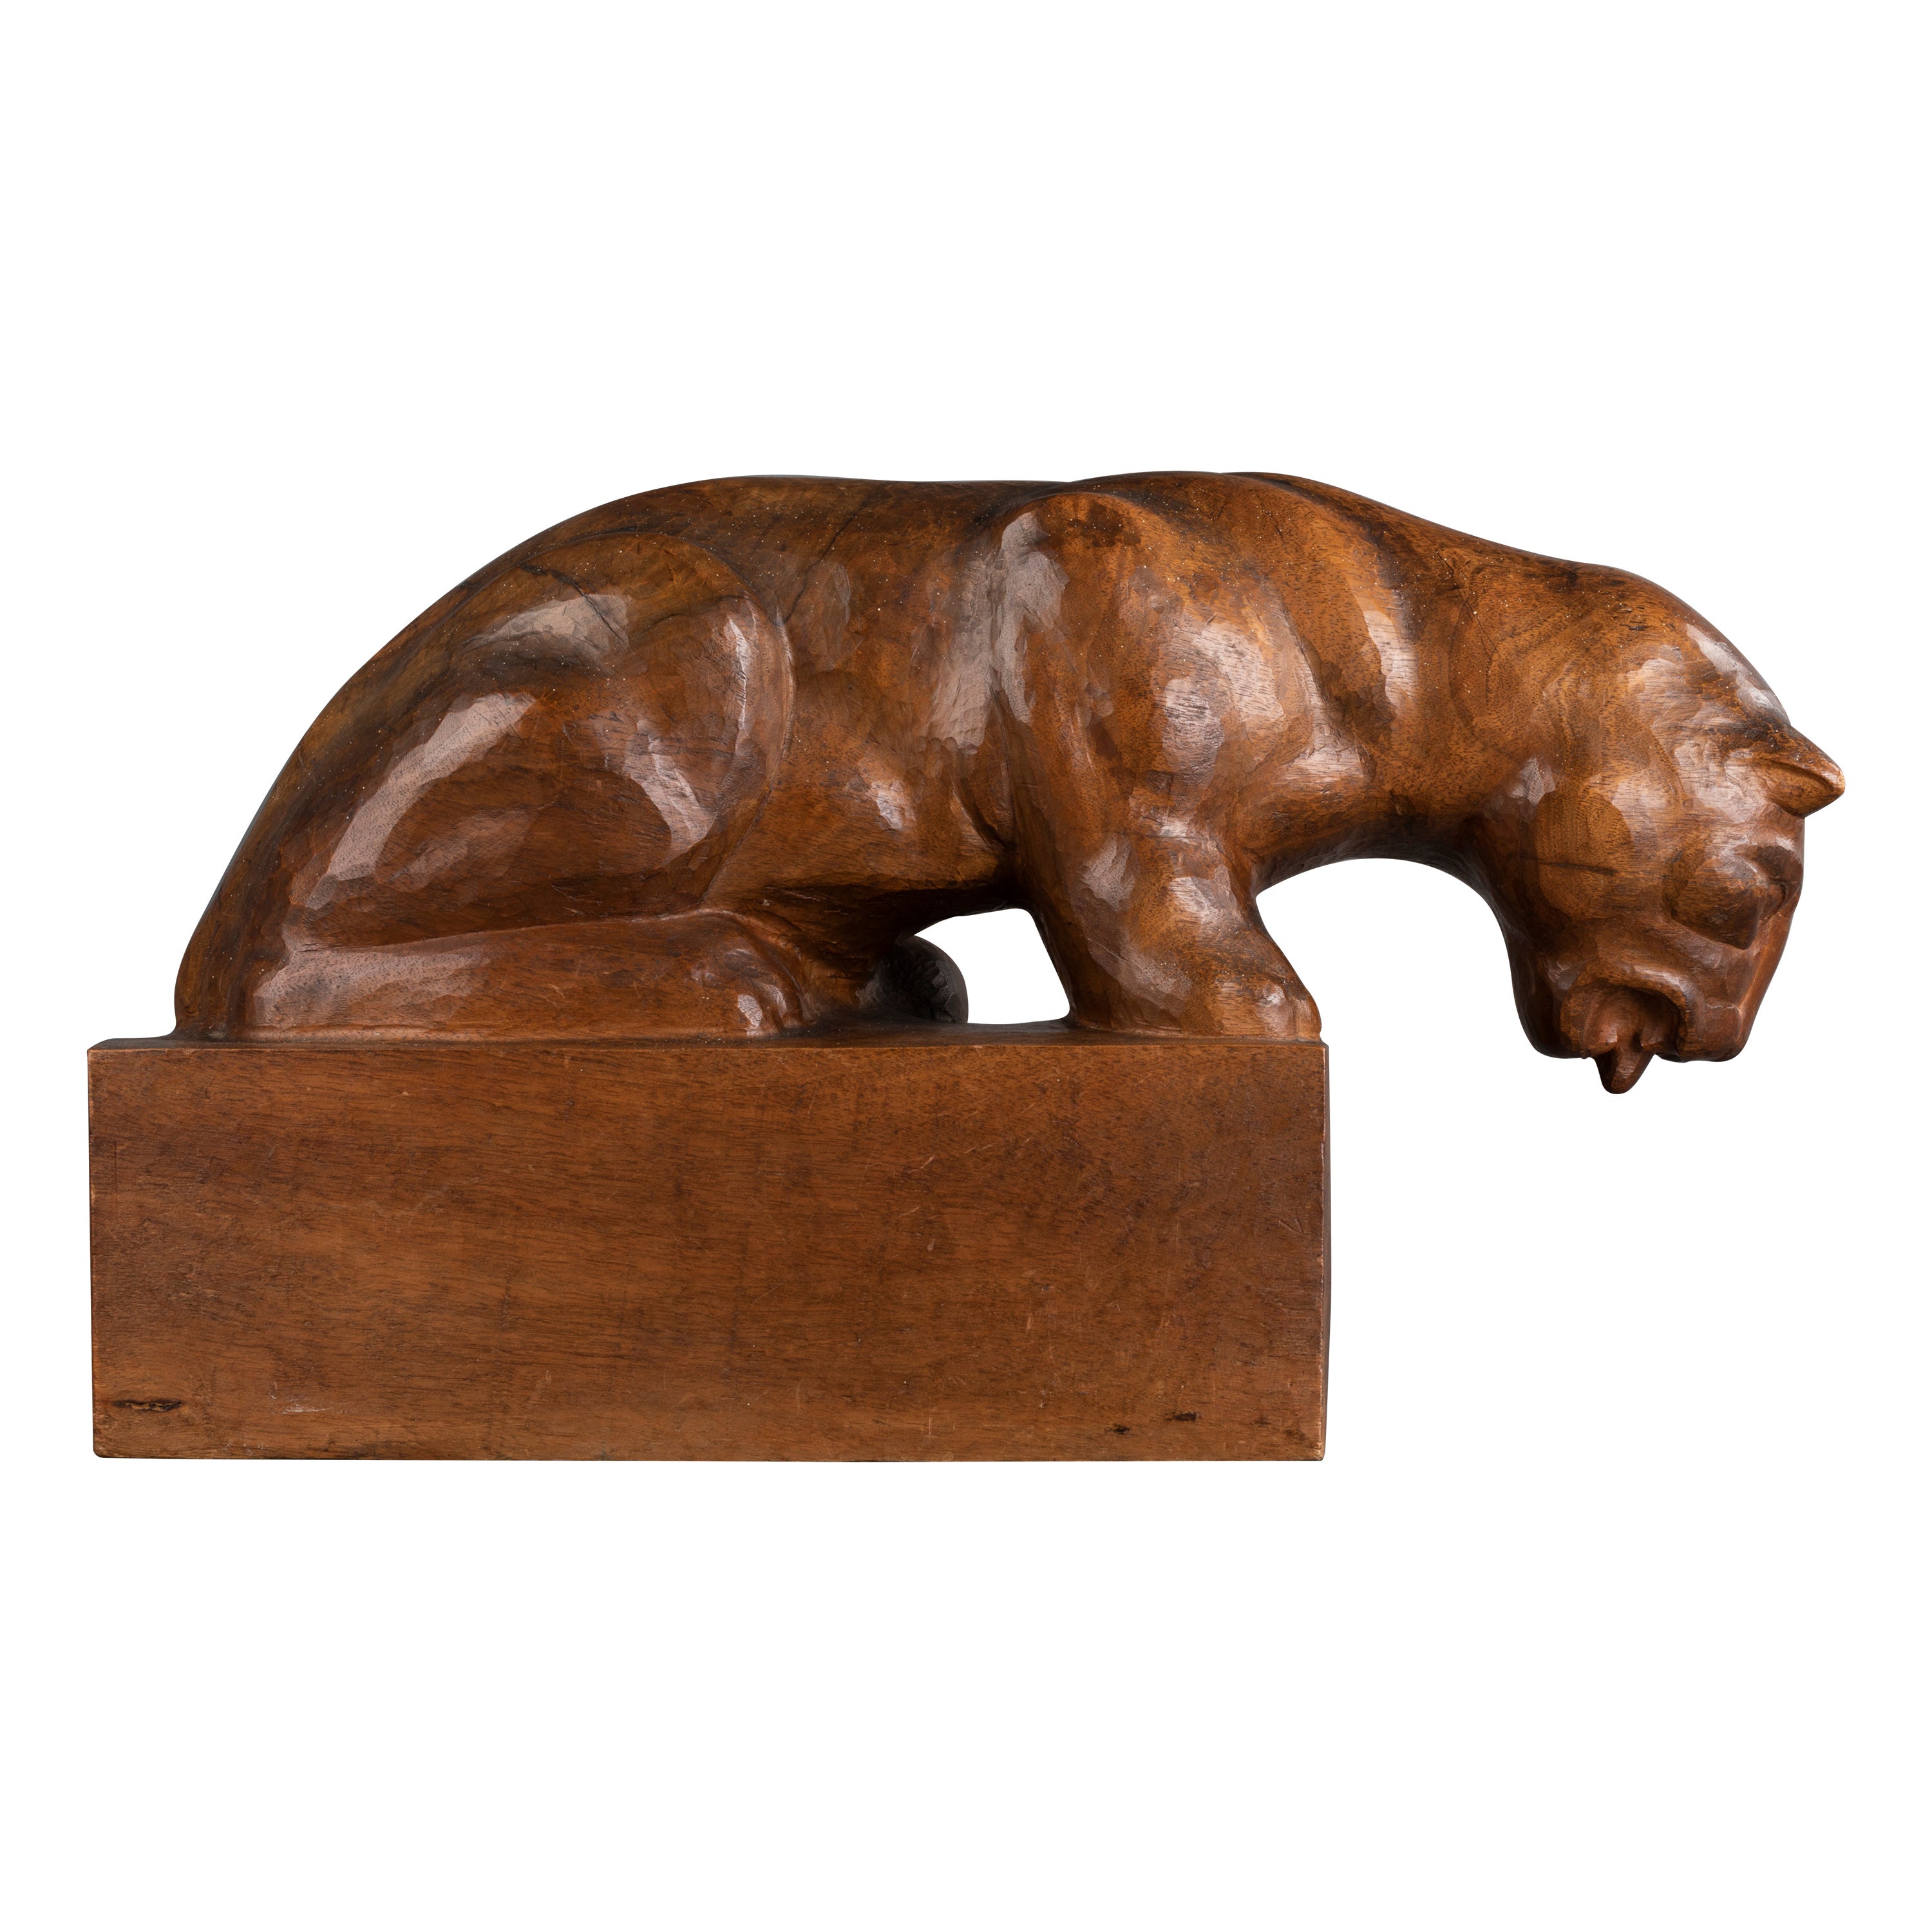 Auguste Trémont(attrib.) : Lion cub drinking, carved wood sculpture c.1950